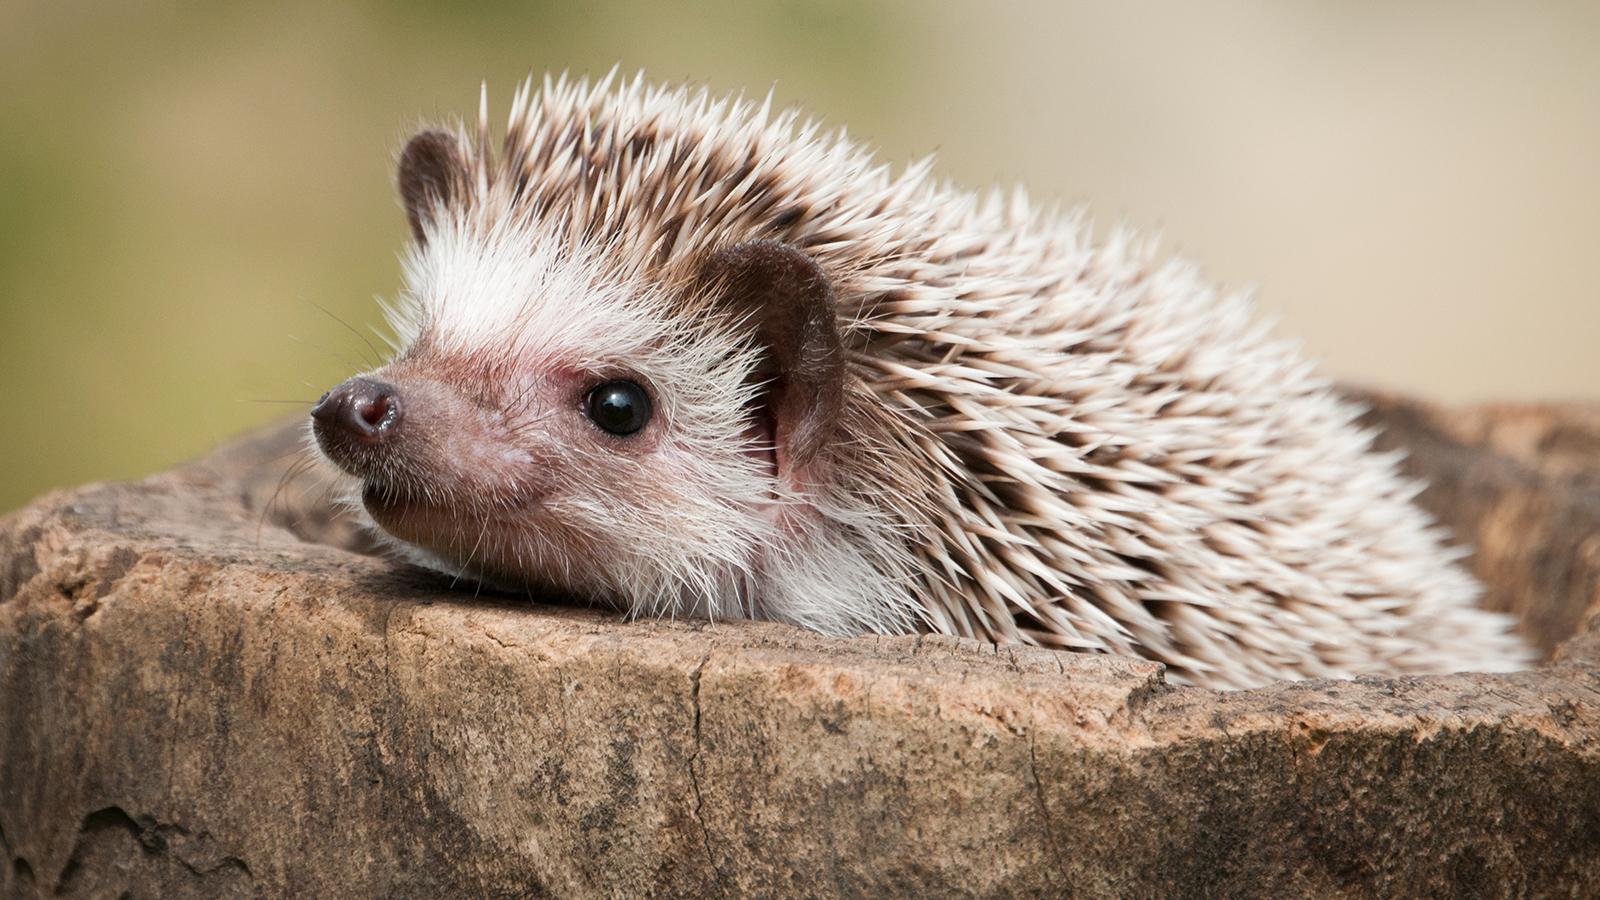 Images of Hedgehog | 1600x900